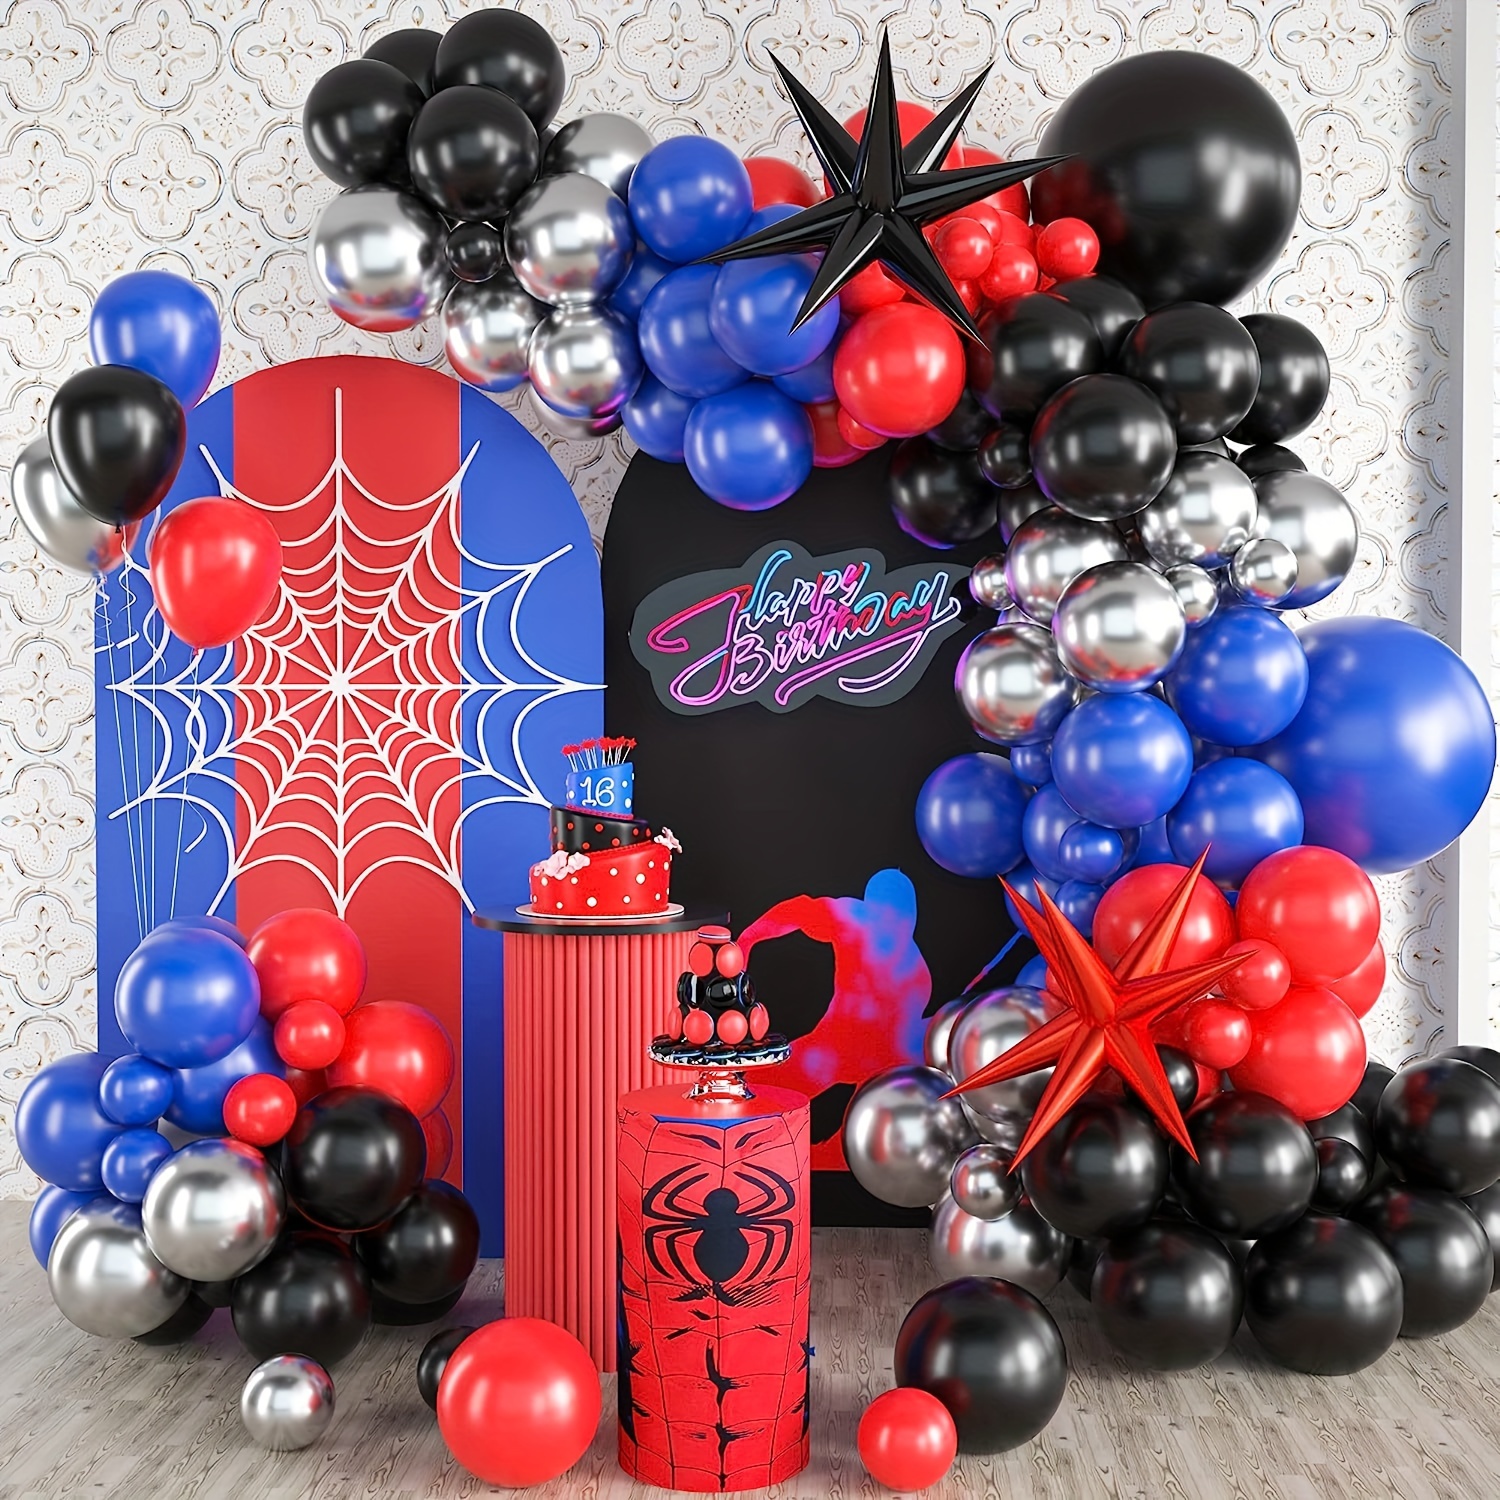 Las mejores ofertas en Spider-Man Hombre Decoración Fiesta de